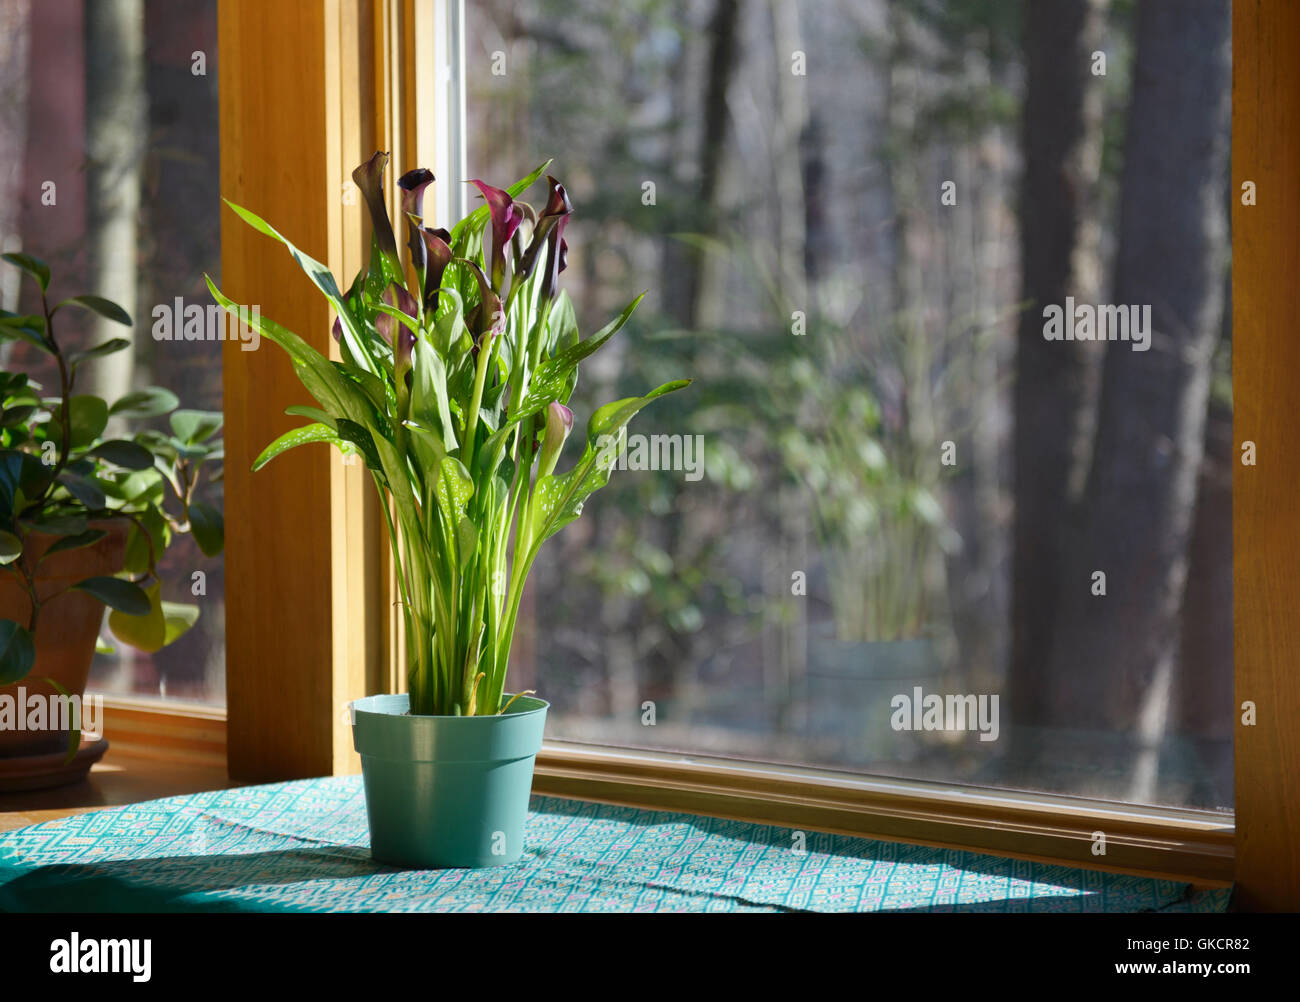 Calla Lilie, Zantedeschia sp., auf der Fensterbank. Phototropismus Sequenz mit Bild GKCR7F Stockfoto